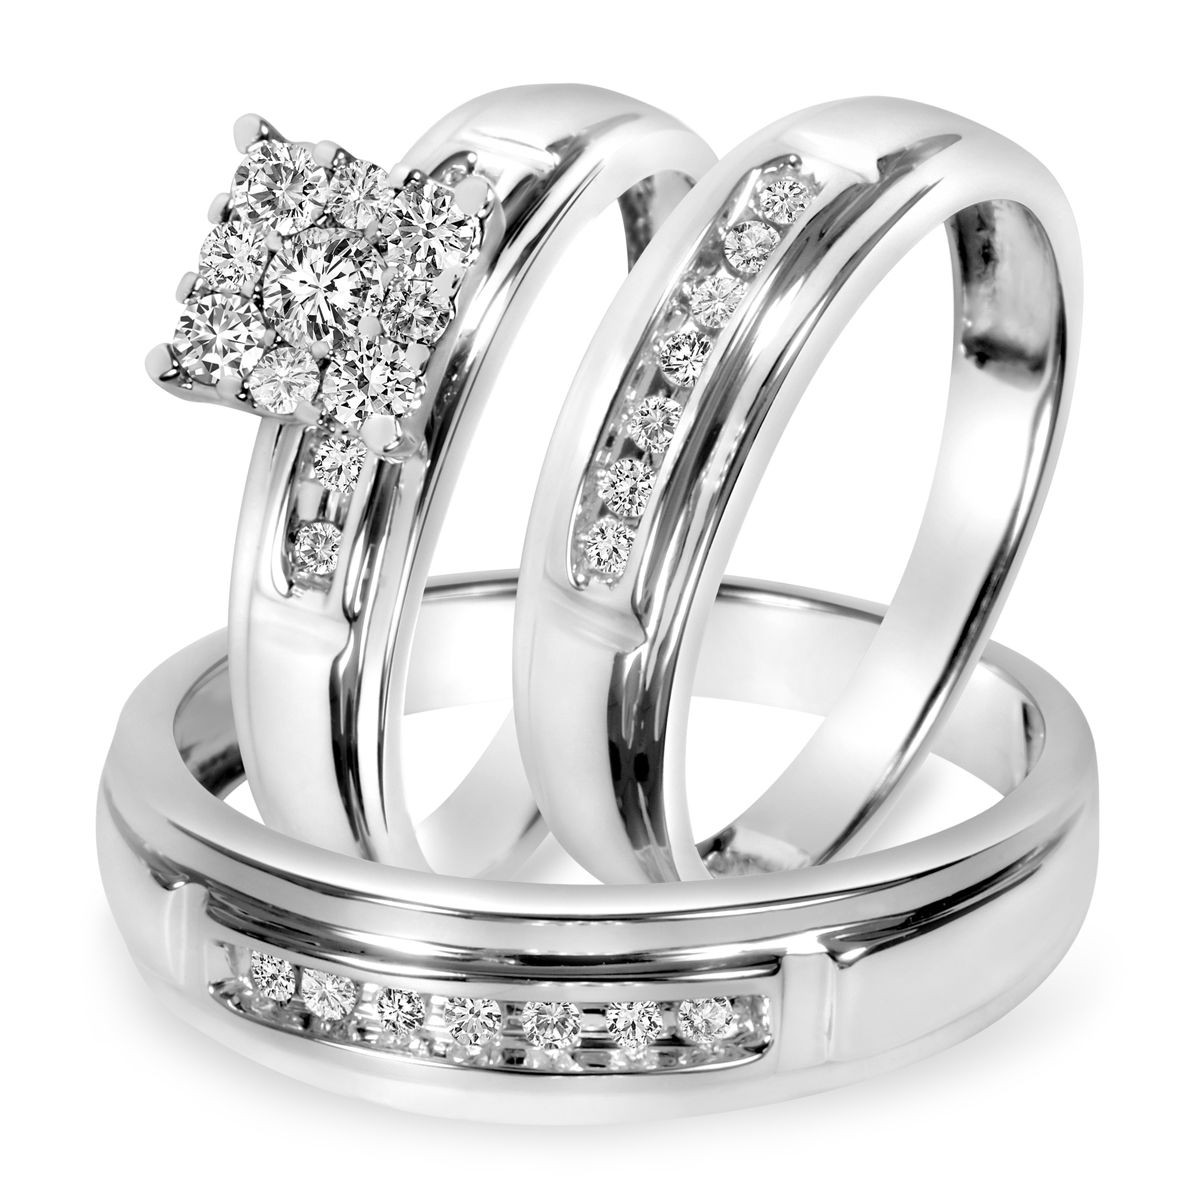 Matching Wedding Bands White Gold
 1 2 CT T W Diamond Trio Matching Wedding Ring Set 10K